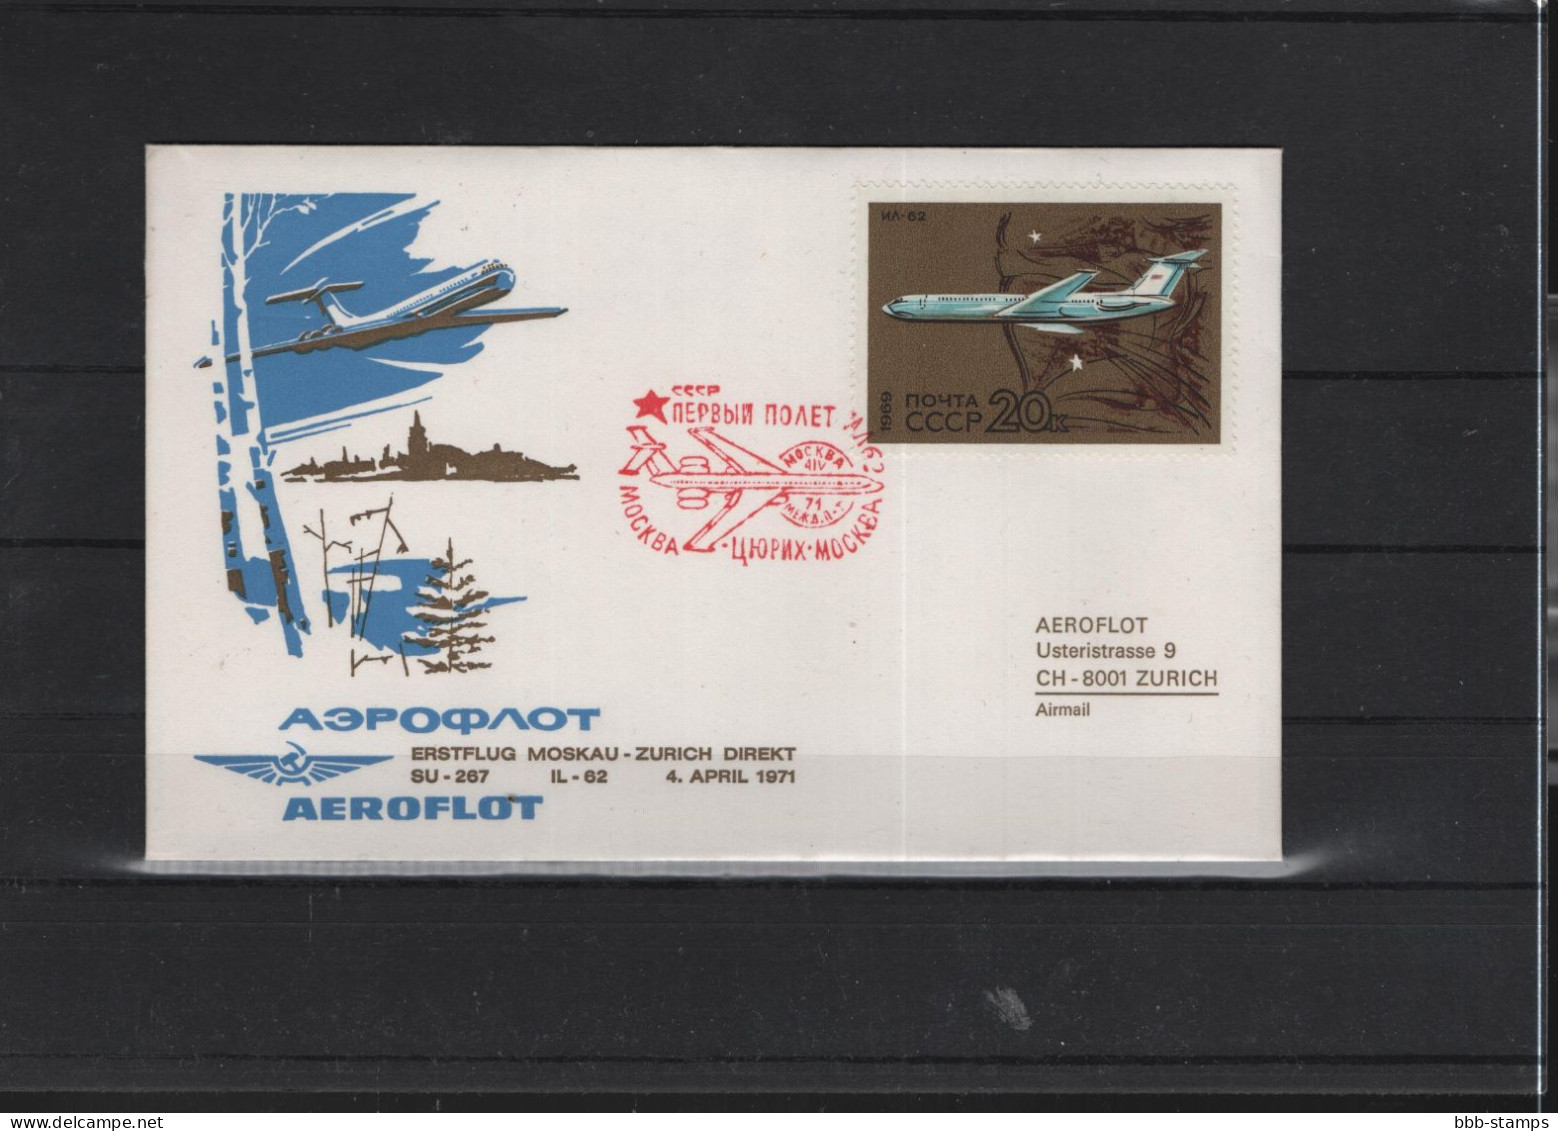 Schweiz Luftpost FFC Aeroflot 3.4.1971 Zürich - Moskau VV - Premiers Vols